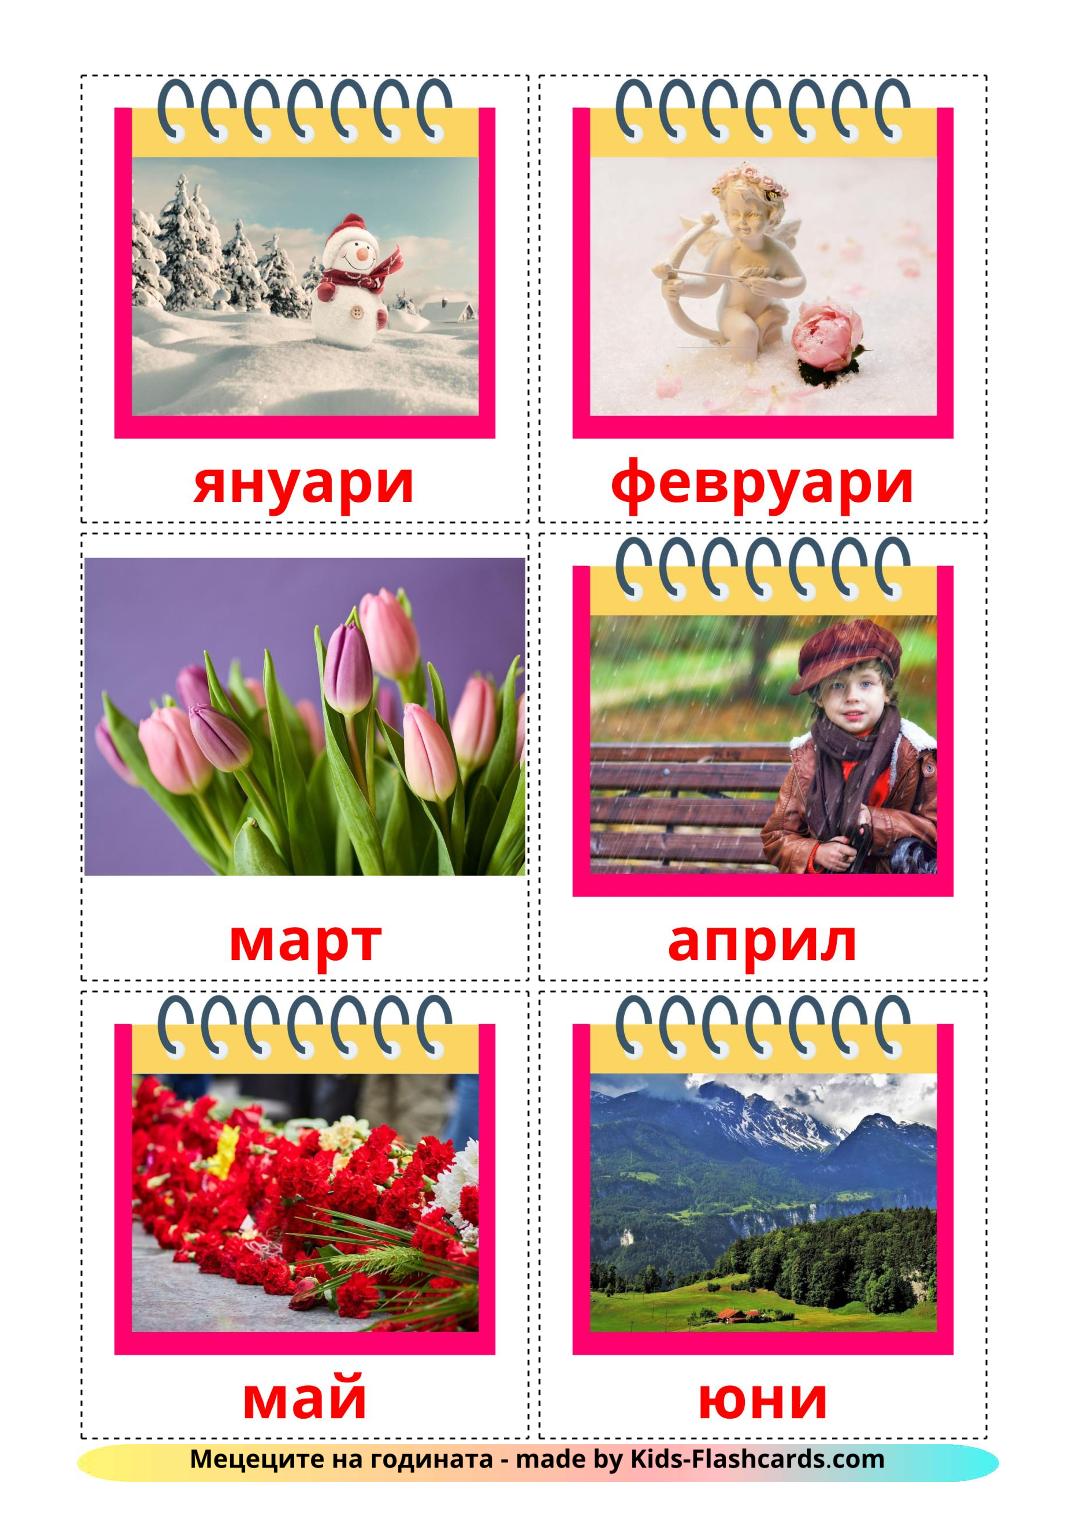 Maanden van het jaar - 12 gratis printbare bulgaarsee kaarten